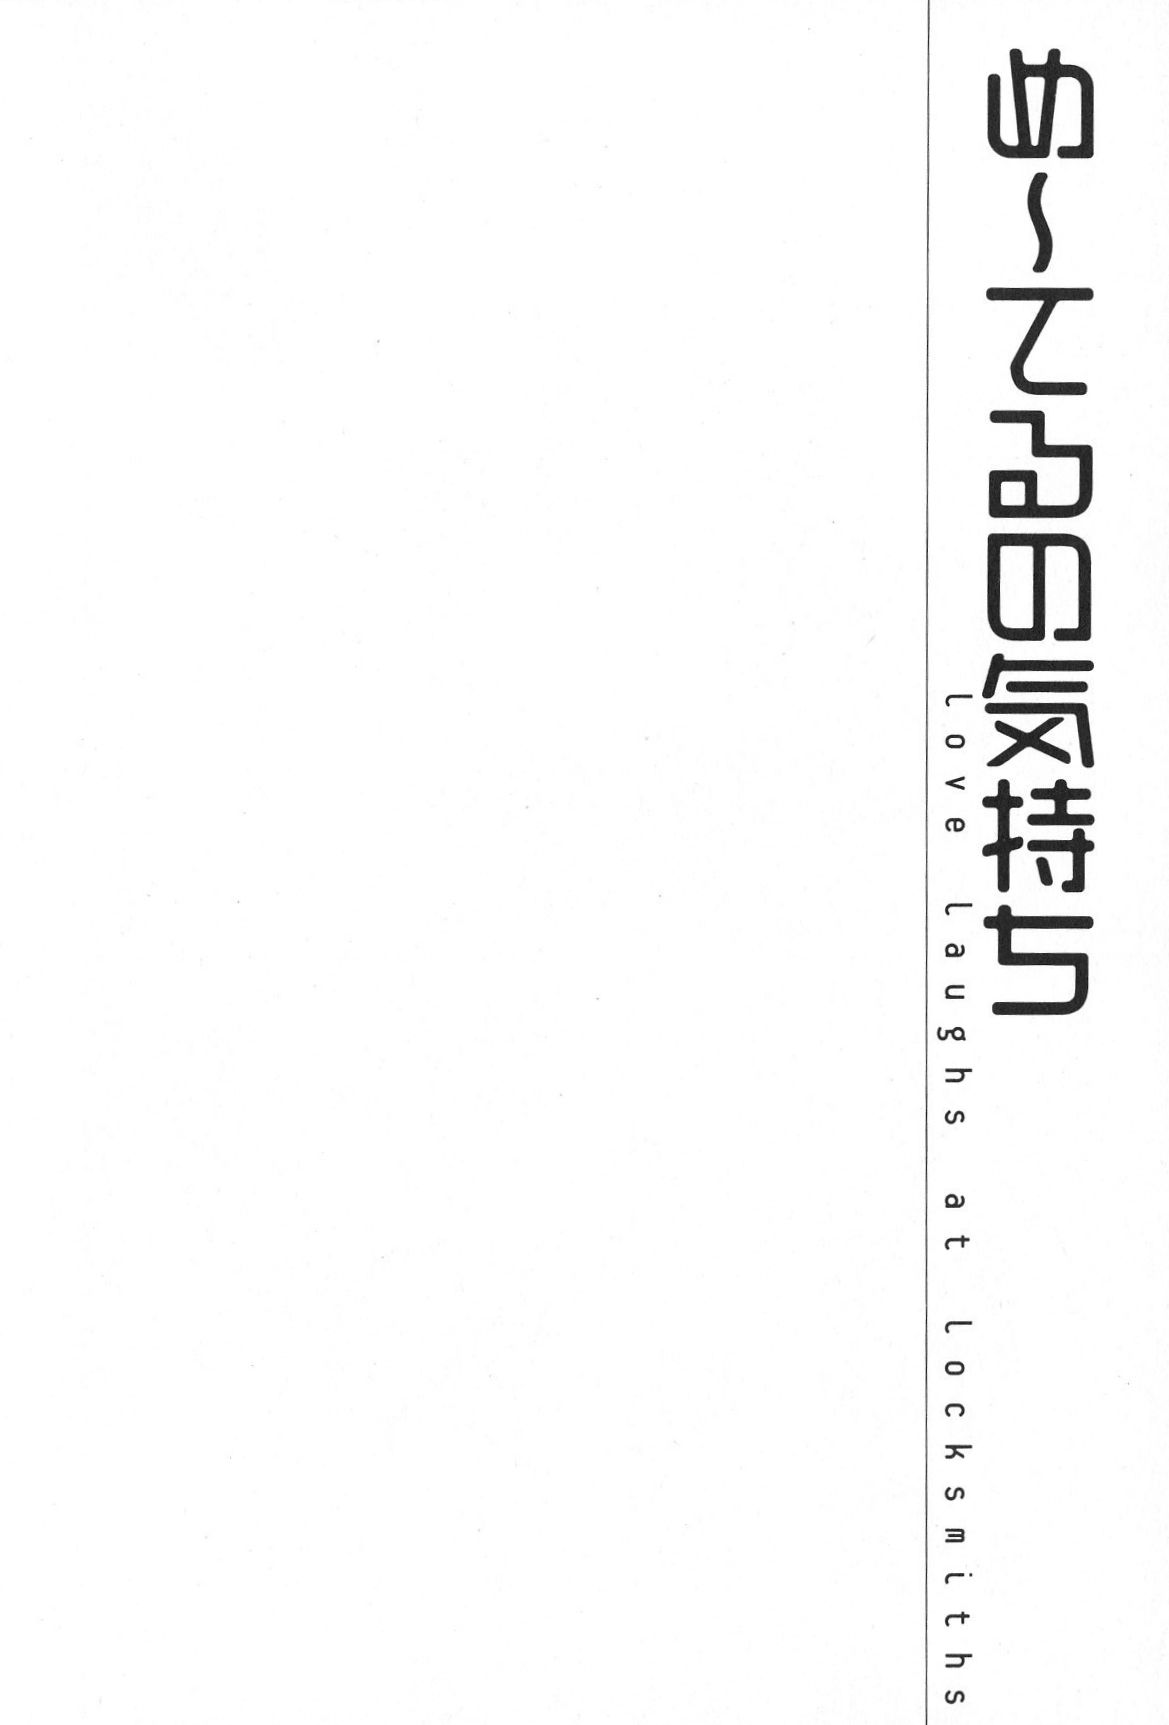 [Oku Hiroya] Me teru no kimochi (Vol. 2) [奥浩哉] め～てるの気持ち(2)